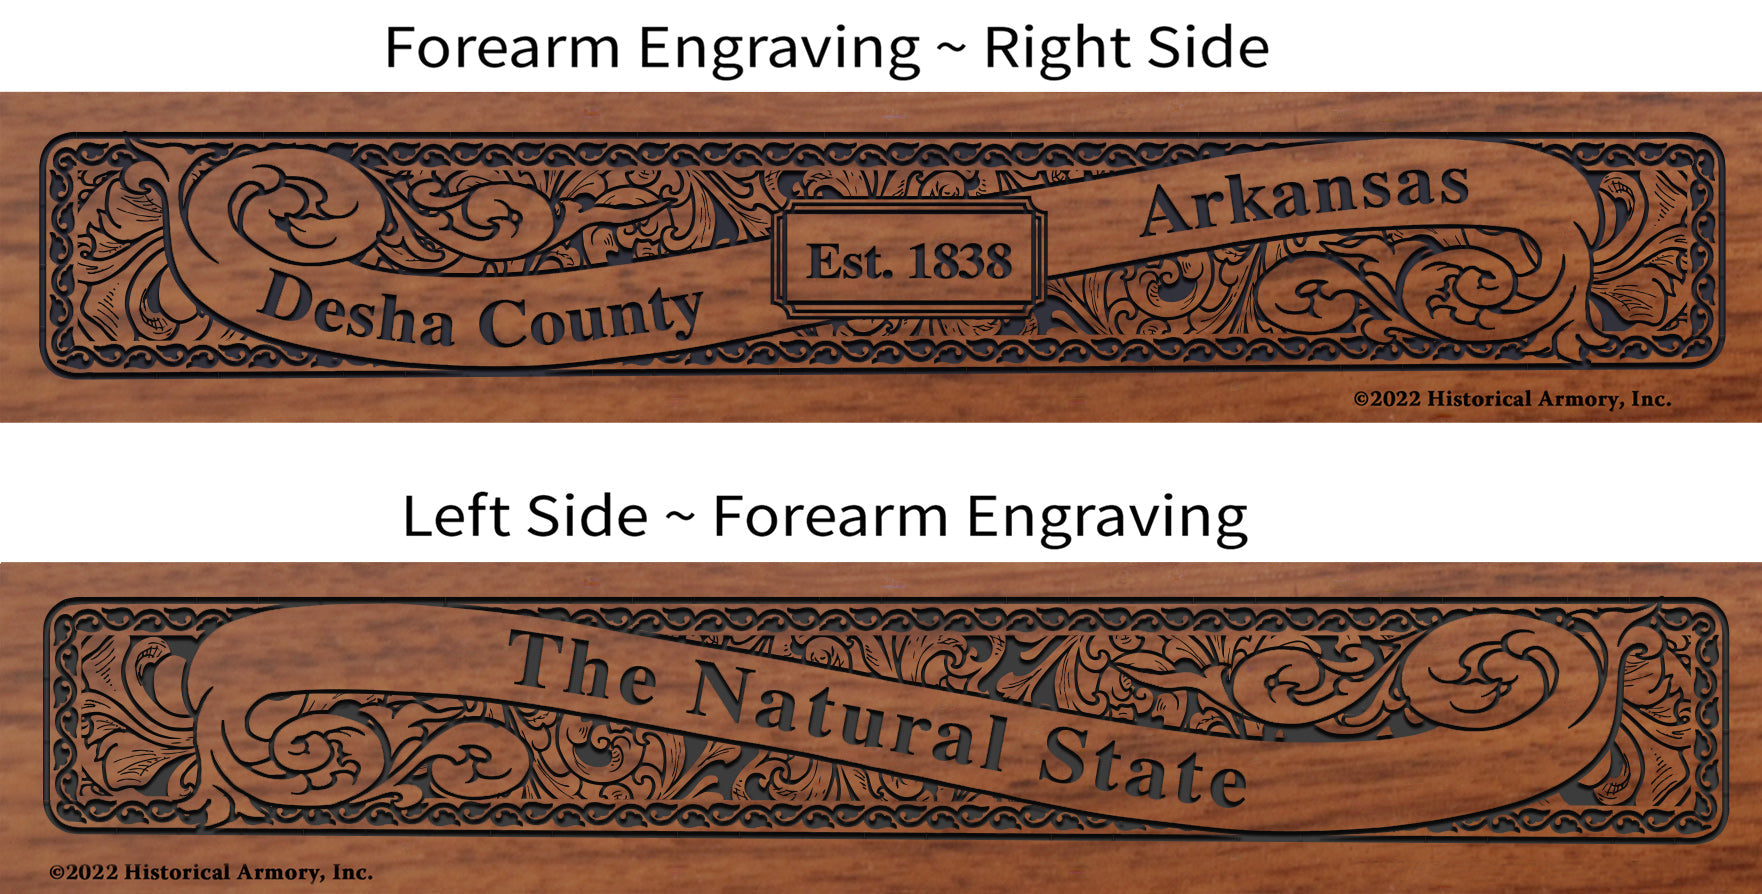 Desha County Arkansas Engraved Rifle Forearm